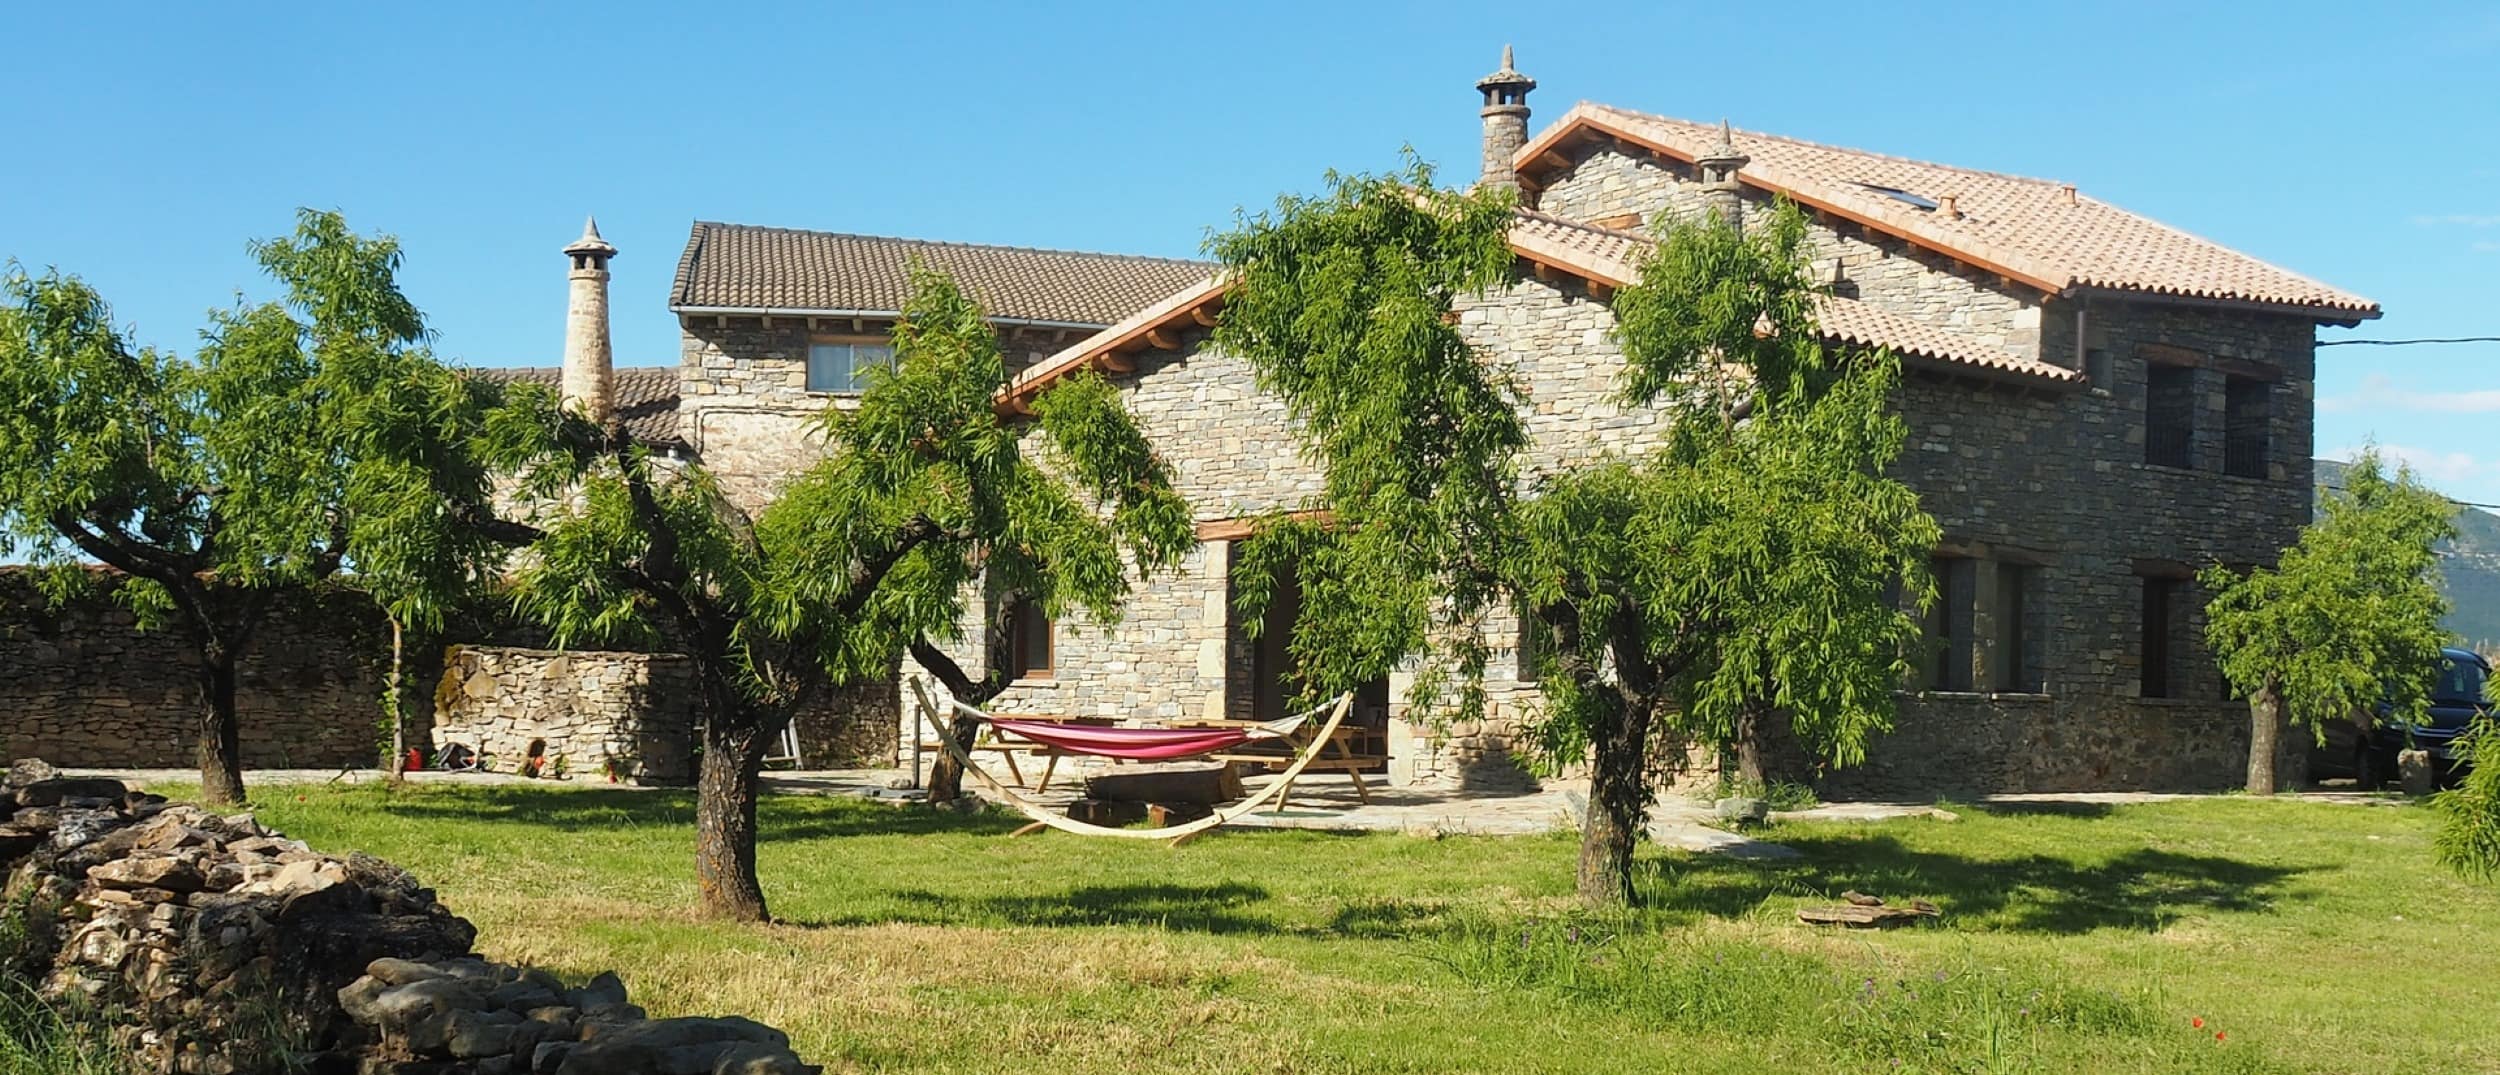 Una casa rural en Huesca, un entorno natural y rural único